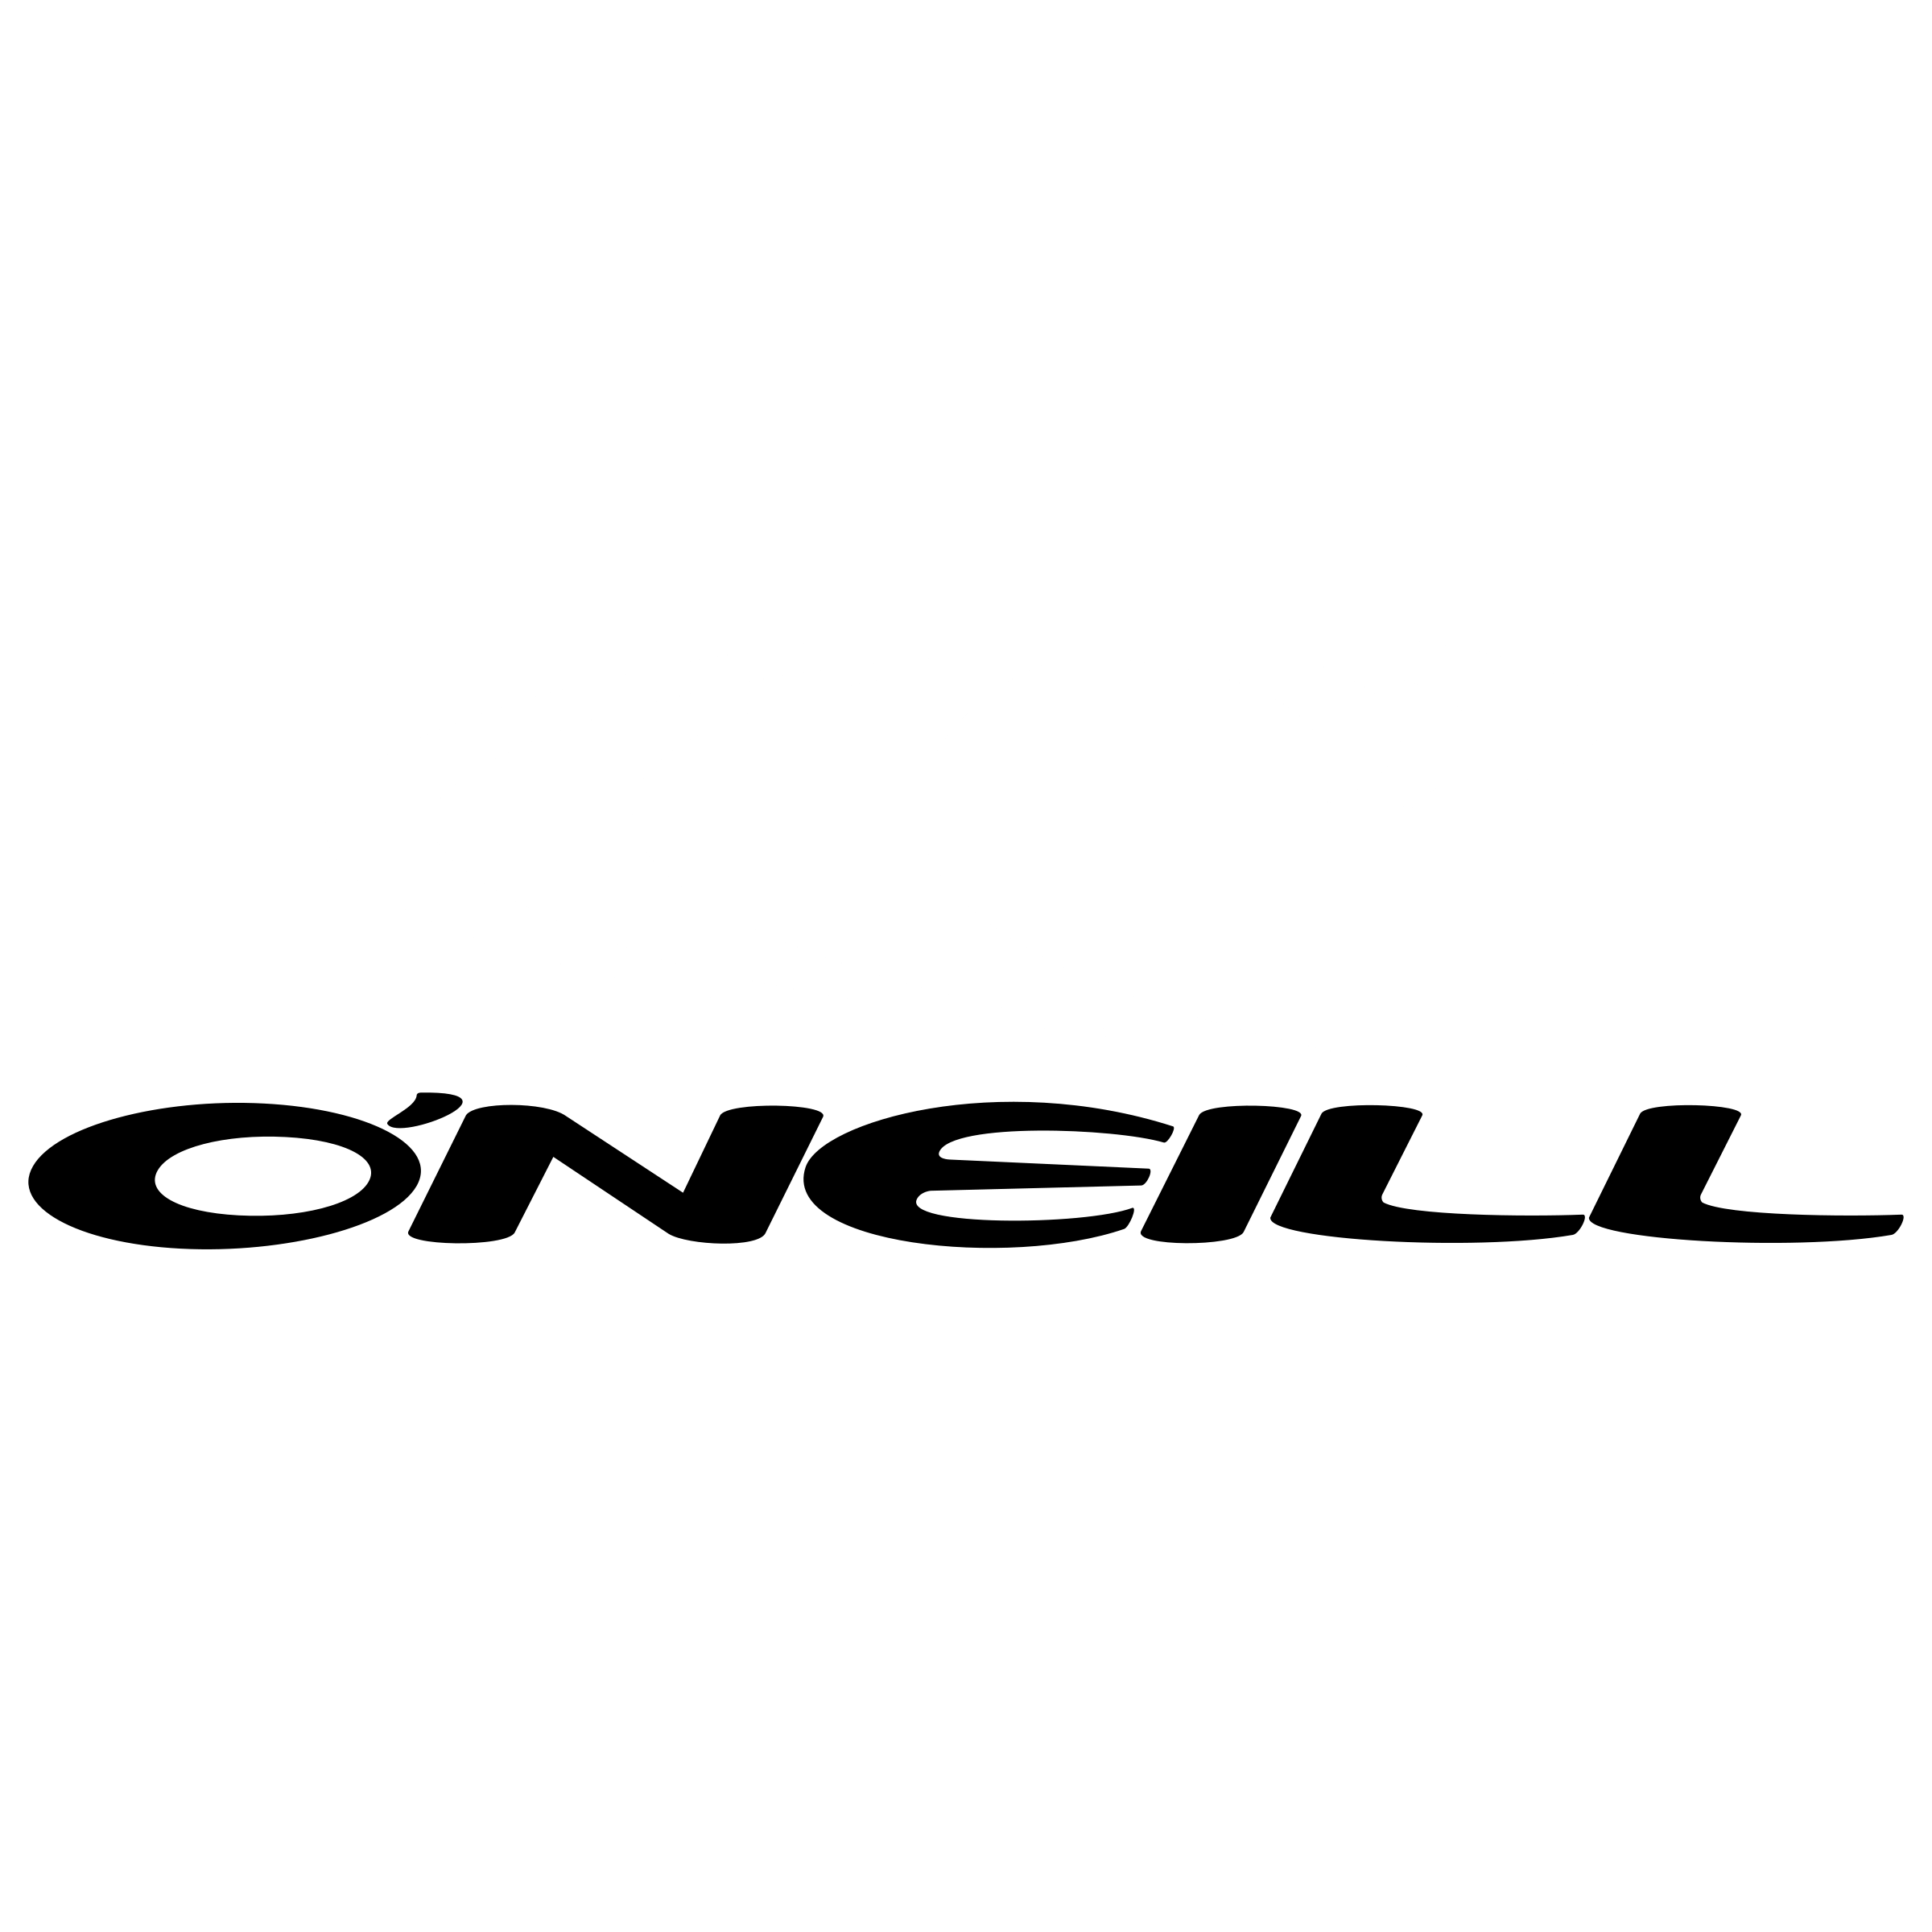 O'Neill Logo - O'Neill Logo PNG Transparent & SVG Vector - Freebie Supply